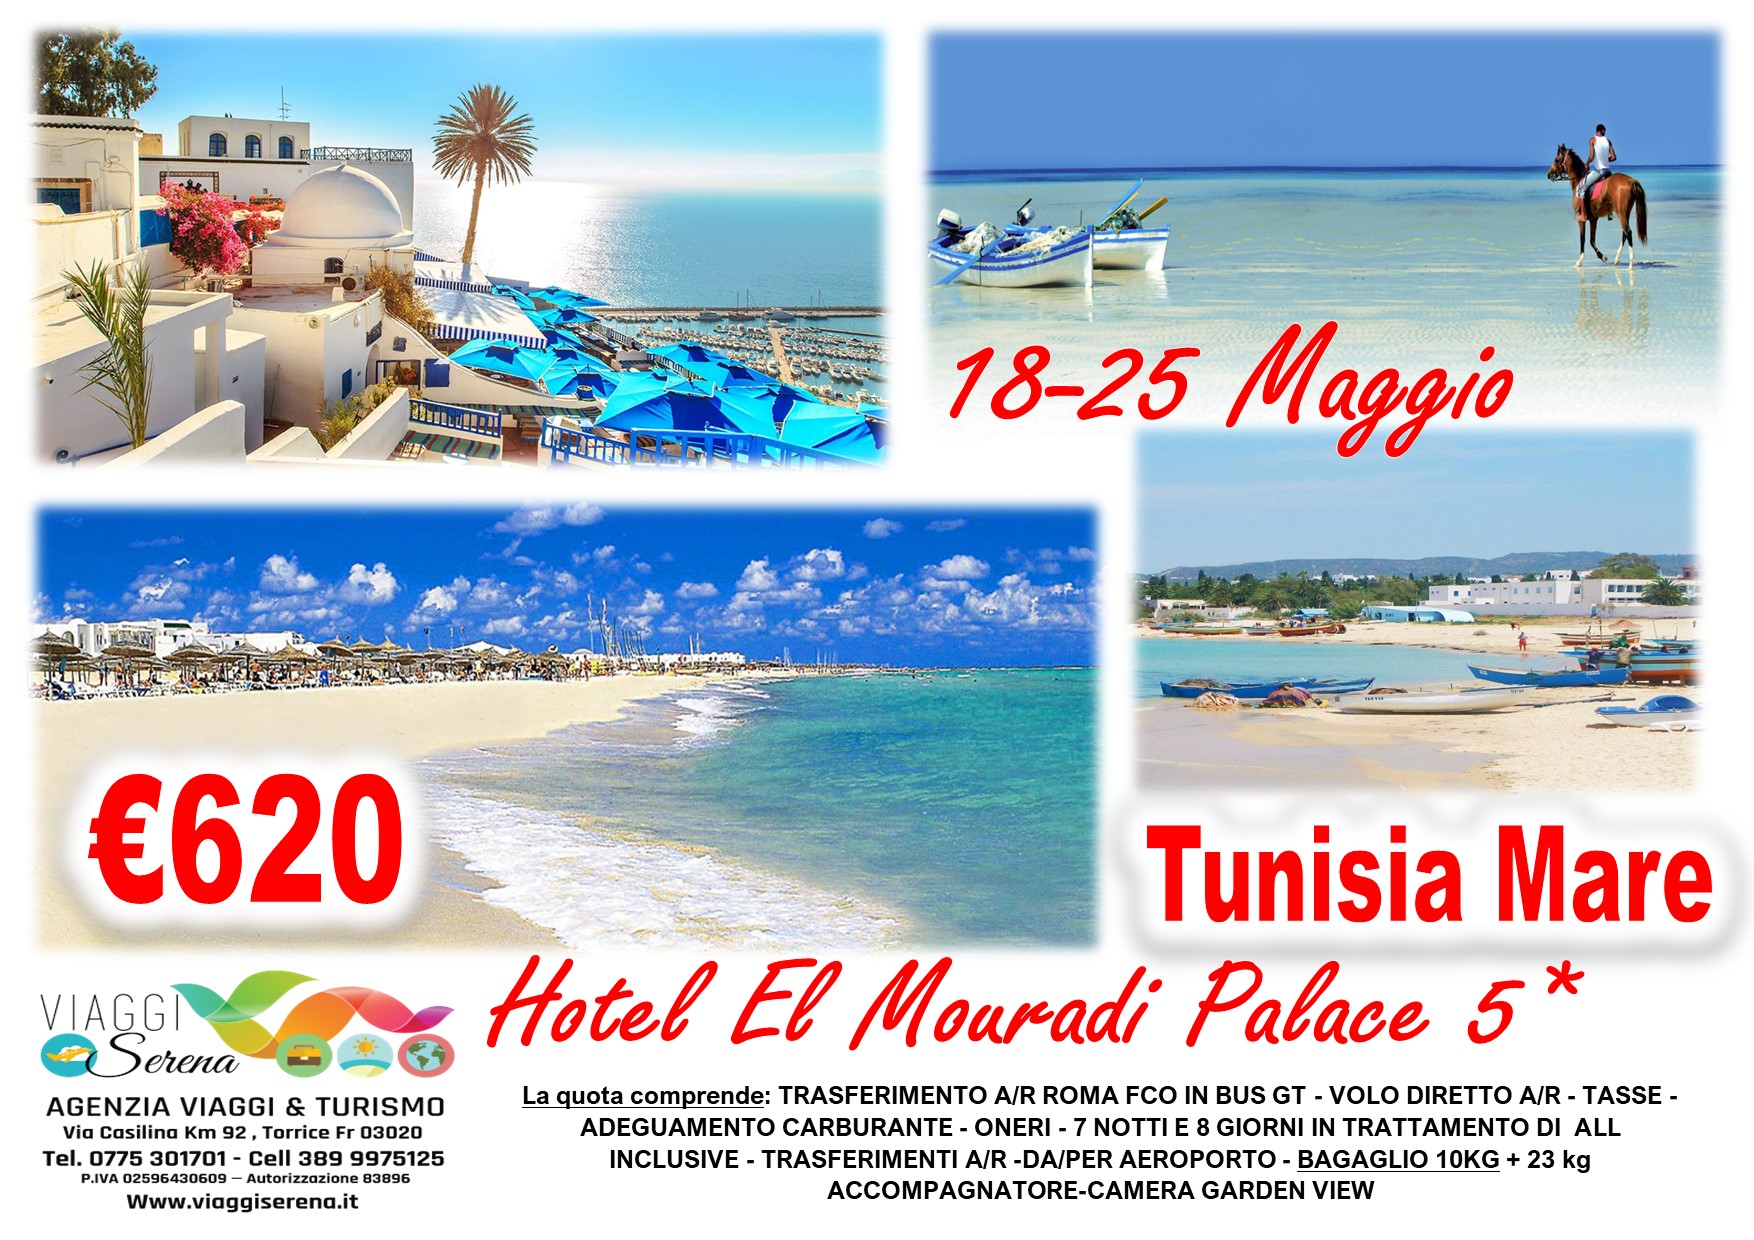 Viaggi di gruppo: Villaggio Mare Tunisia El Mouradi Palace 5* 18-25 Maggio €620,00